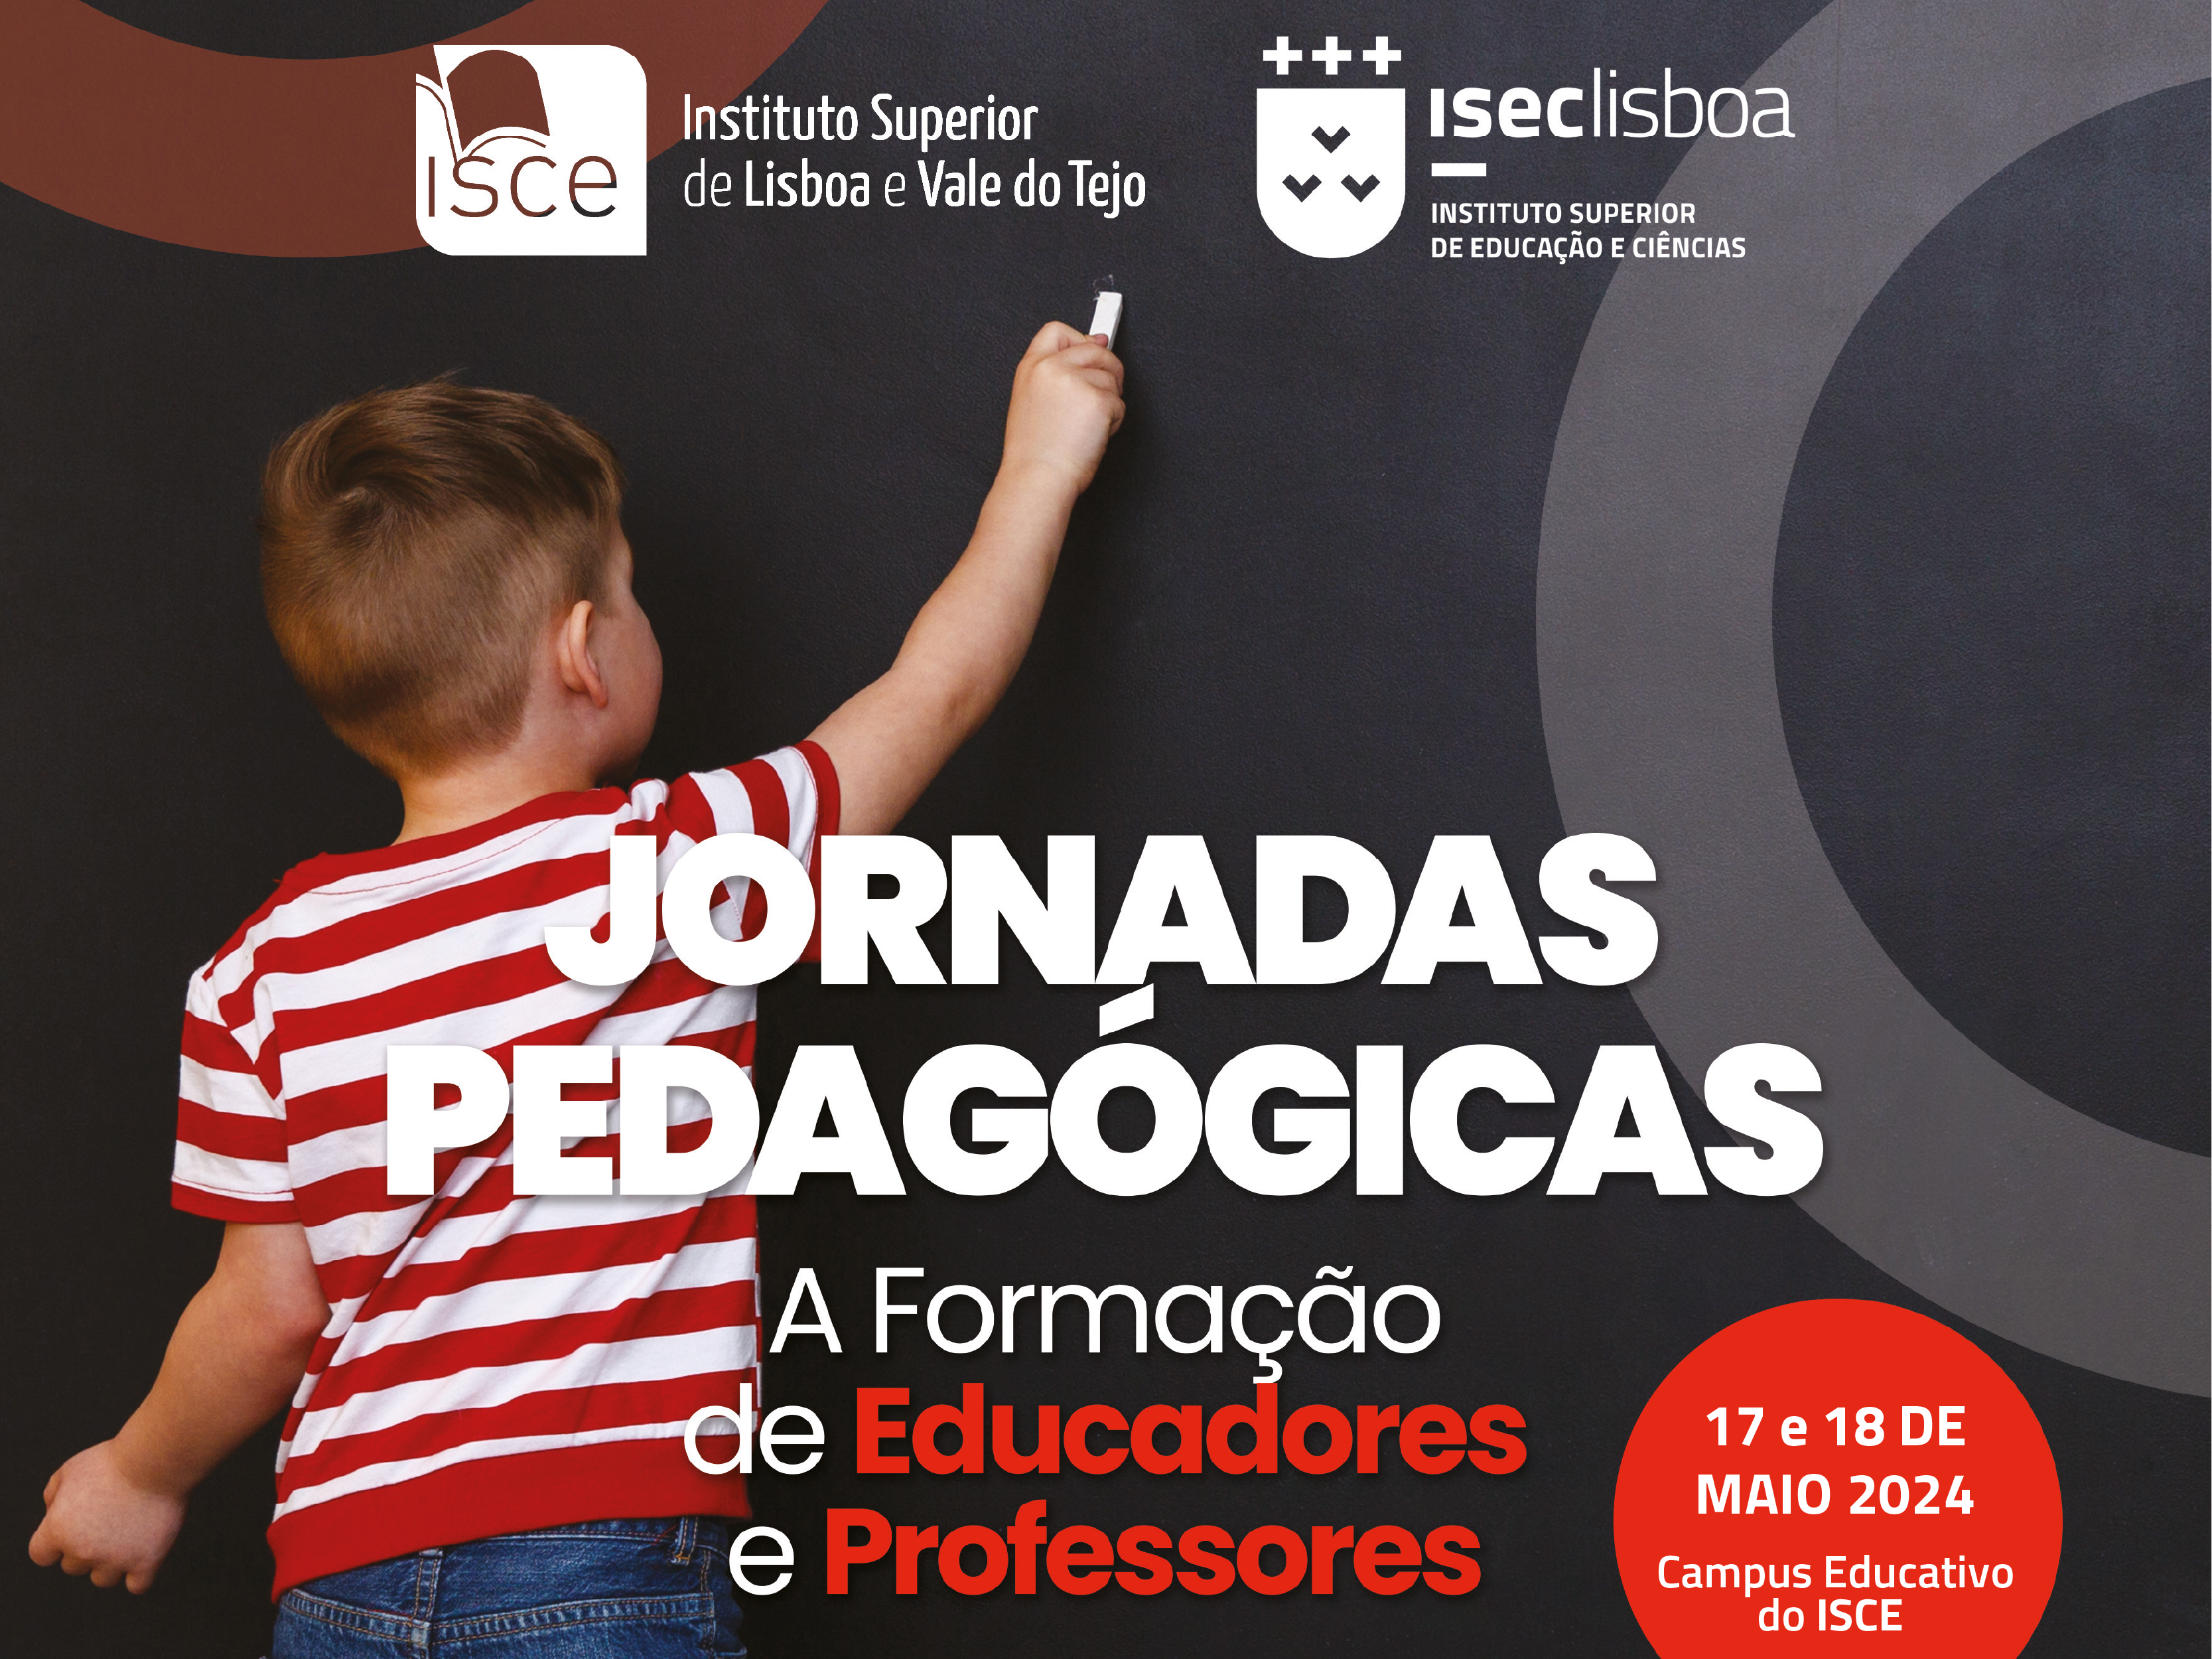 ISCE e ISEC Lisboa organizam Jornadas Pedagógicas “A Formação de Educadores e Professores”